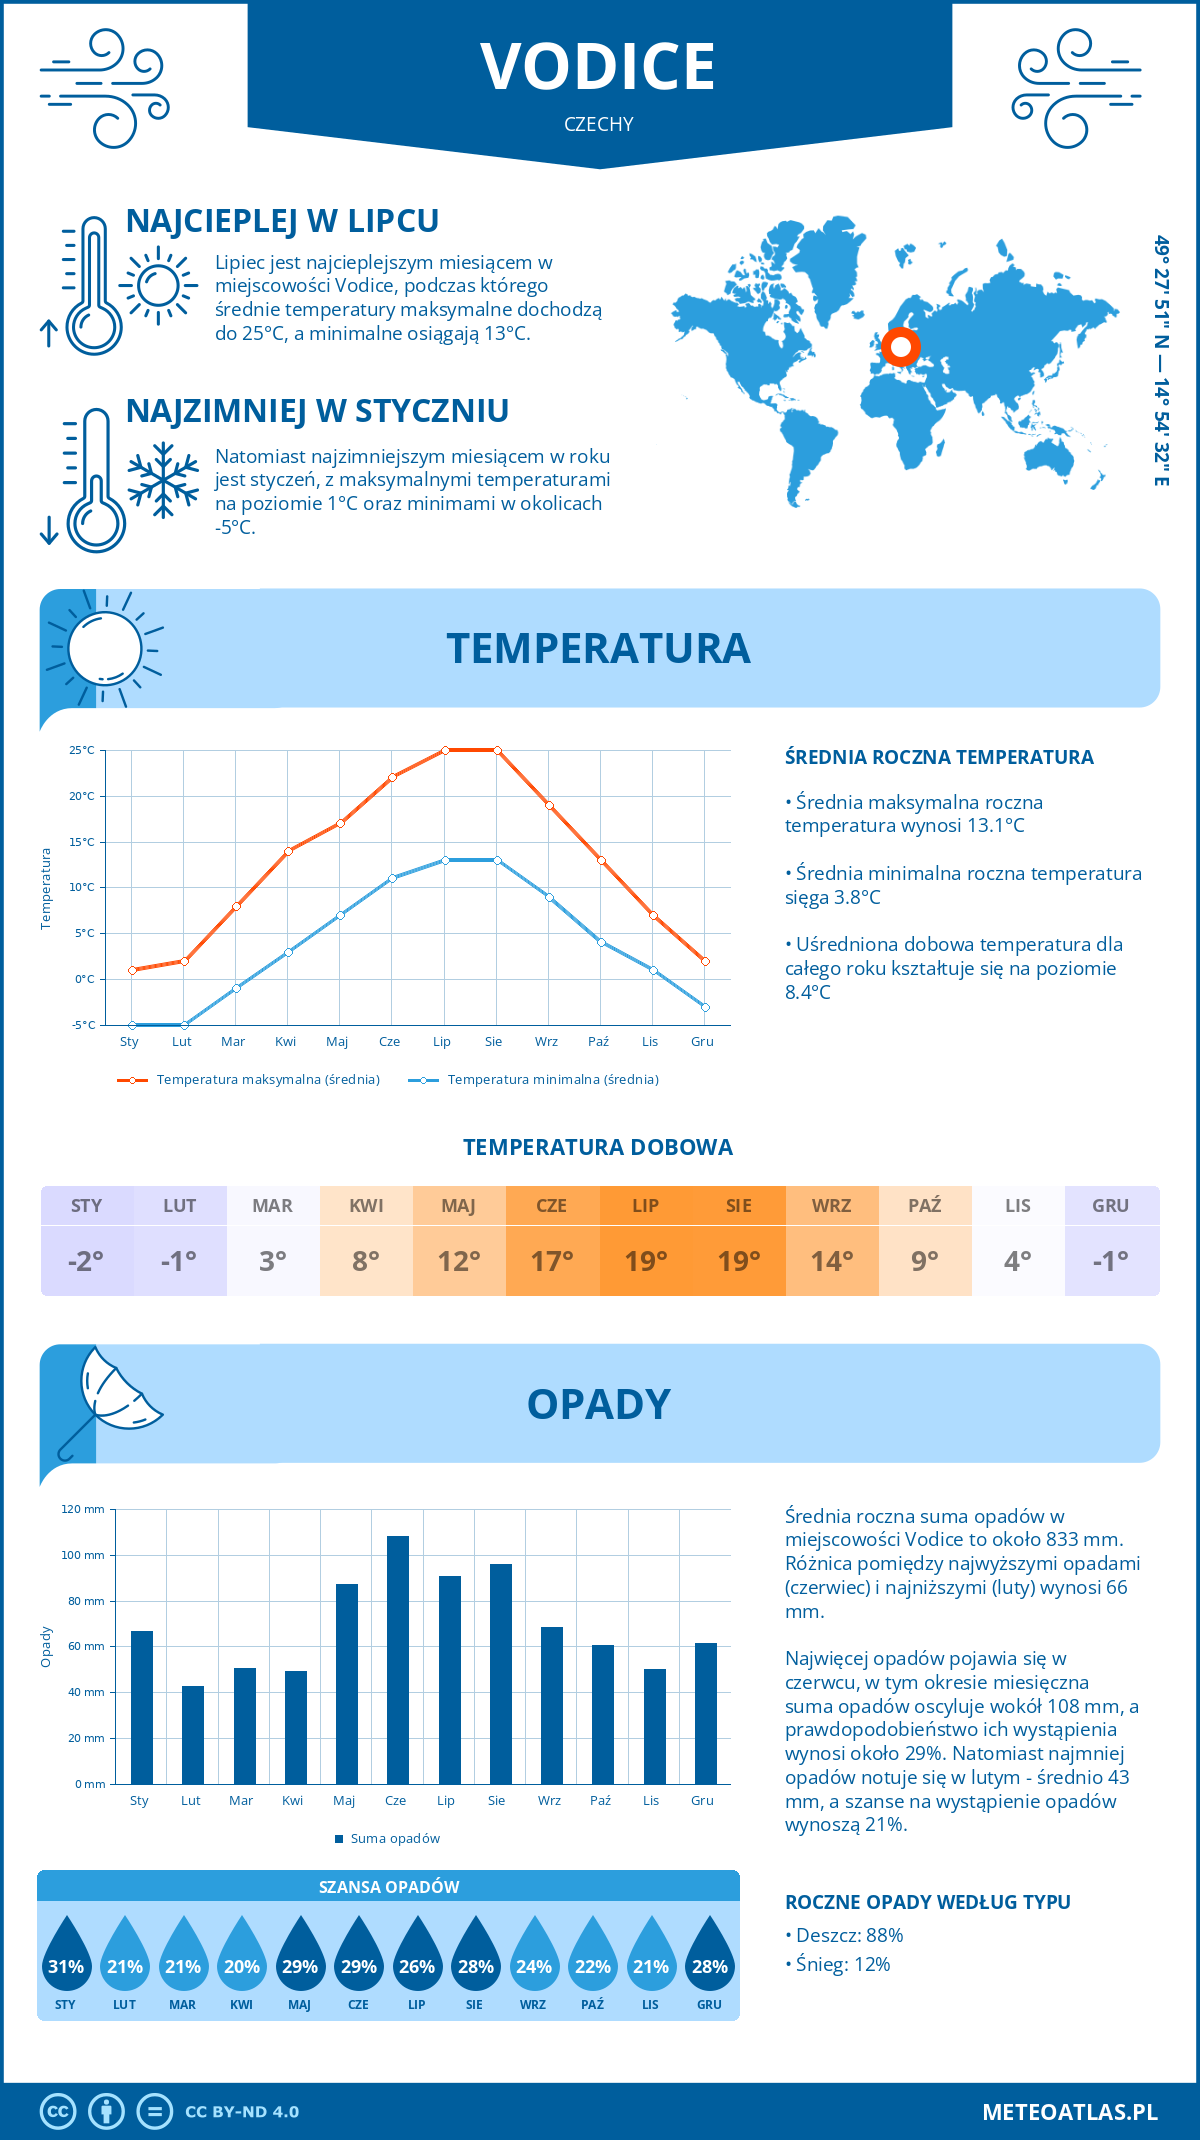 Pogoda Vodice (Czechy). Temperatura oraz opady.